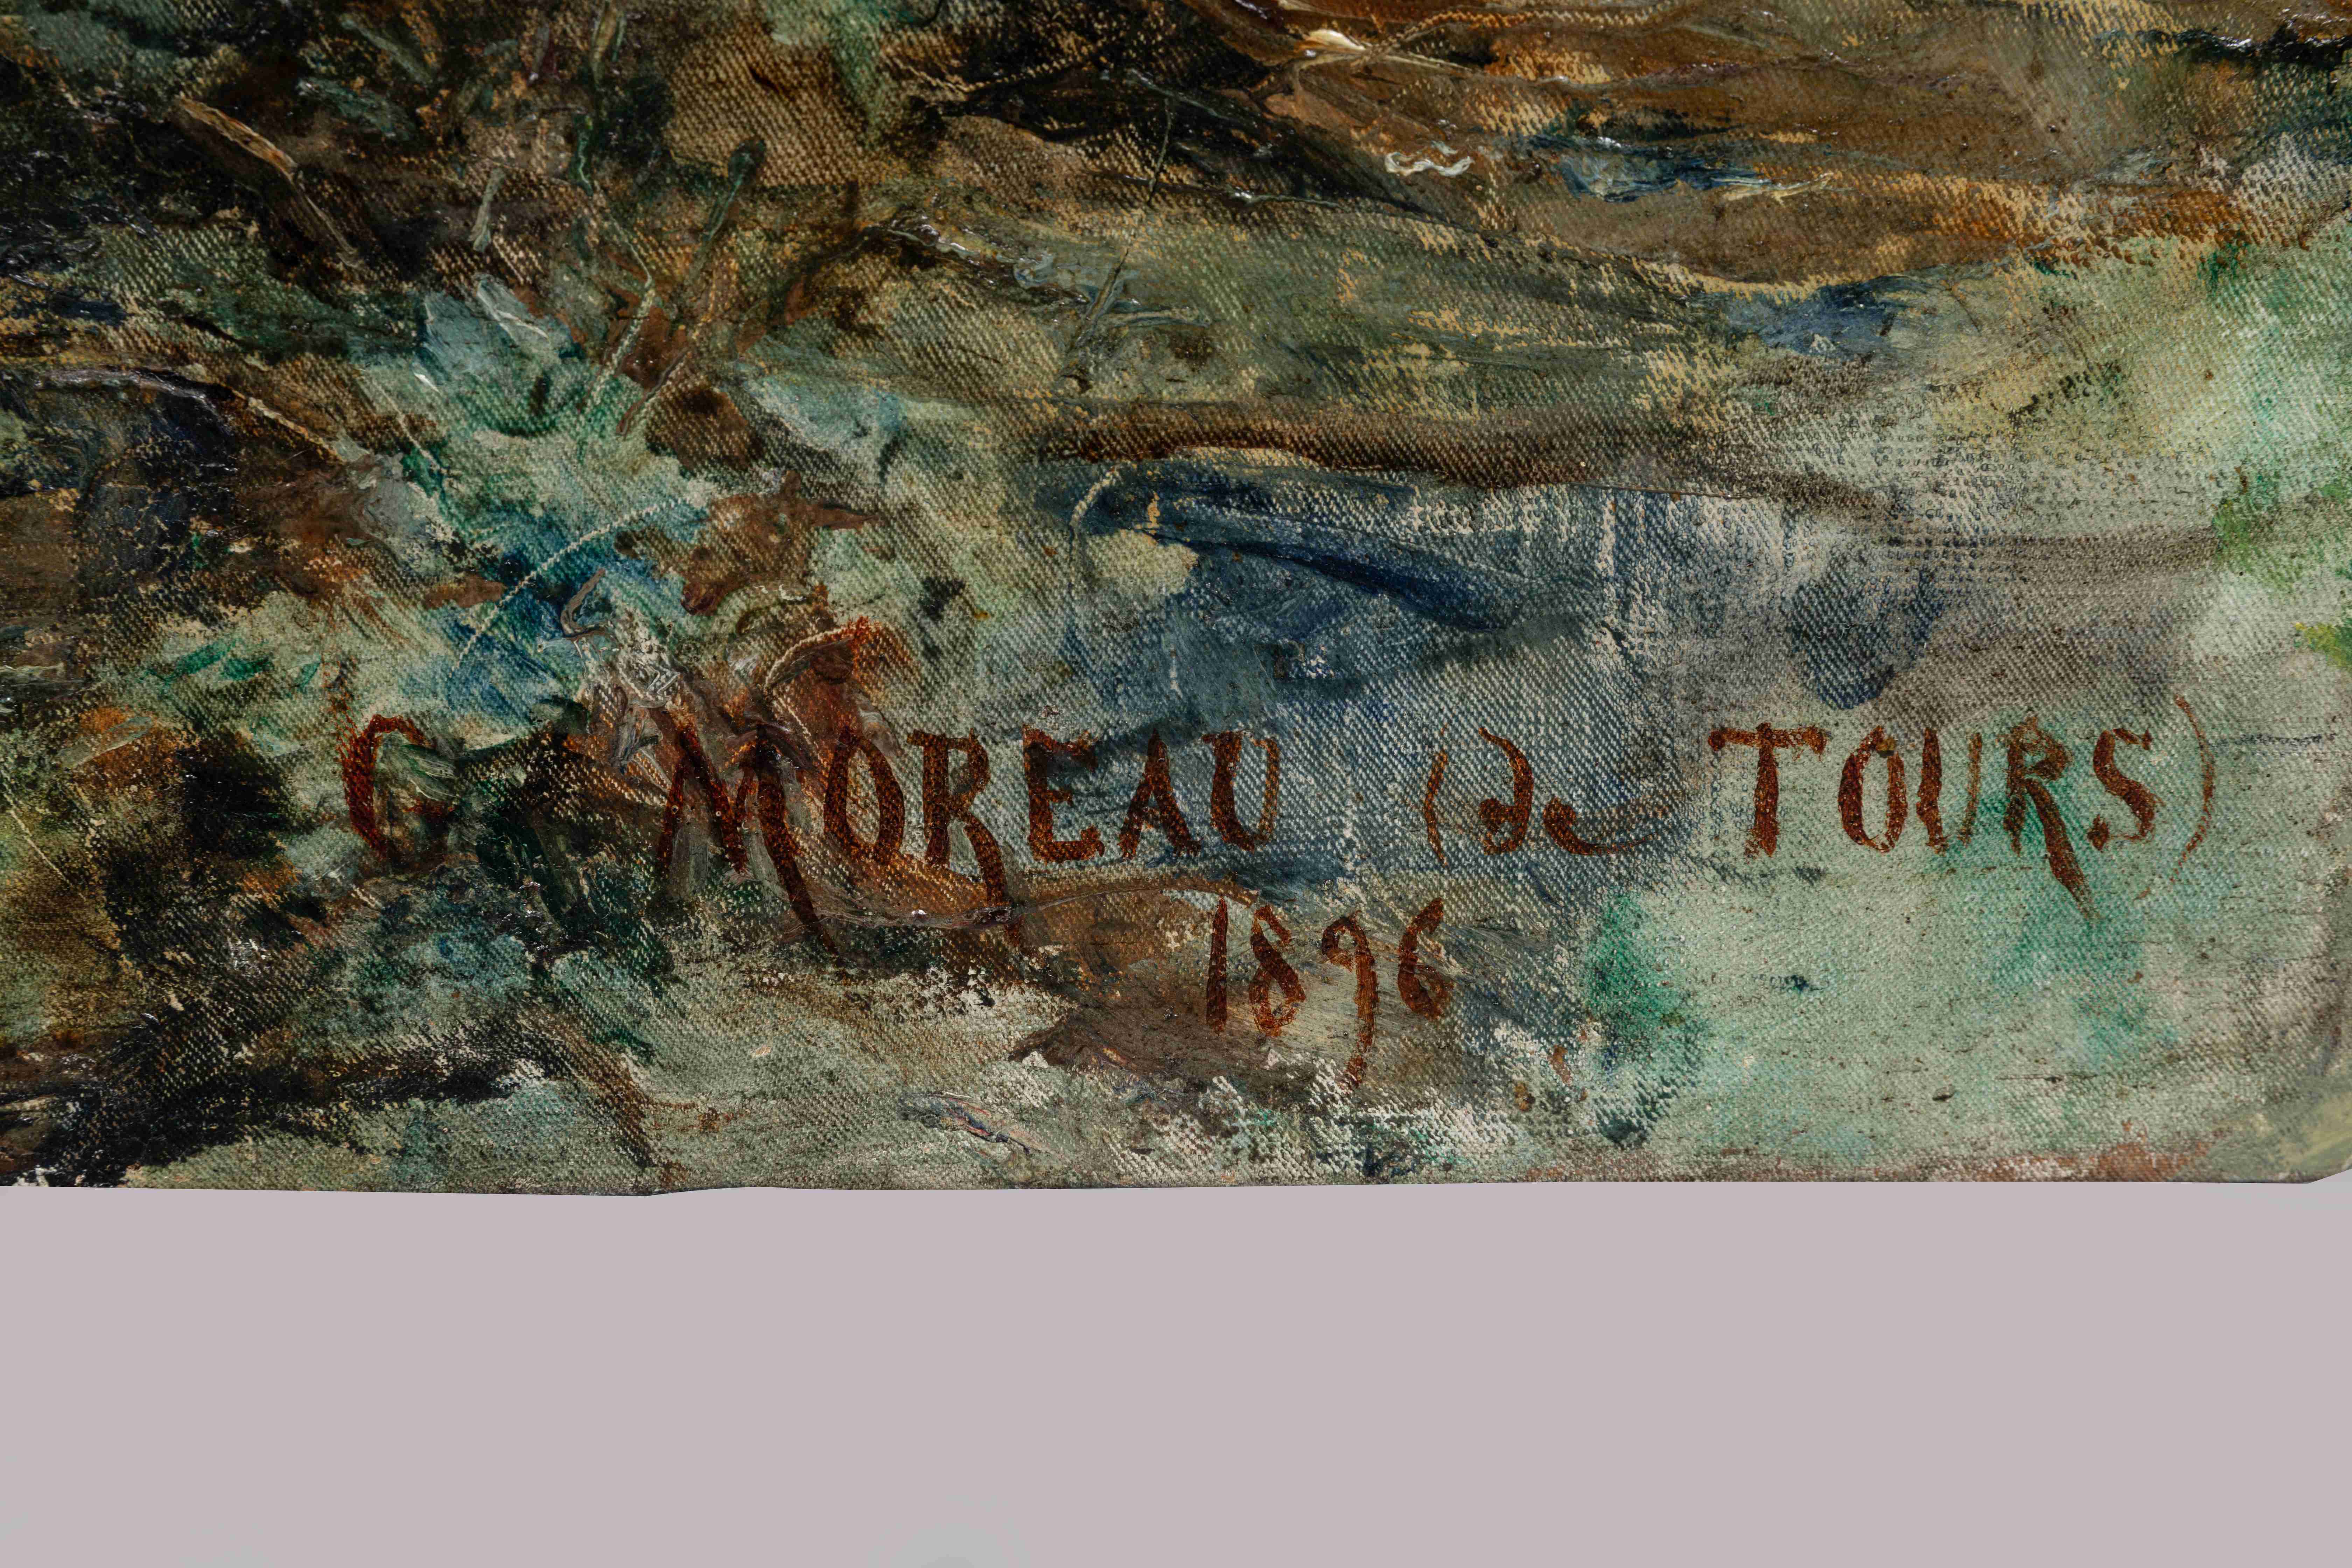 Georges MOREAU DE TOURS (Ivry-sur-Seine, 1848 - Bois-le-Roi, 1901)
"Le coup...